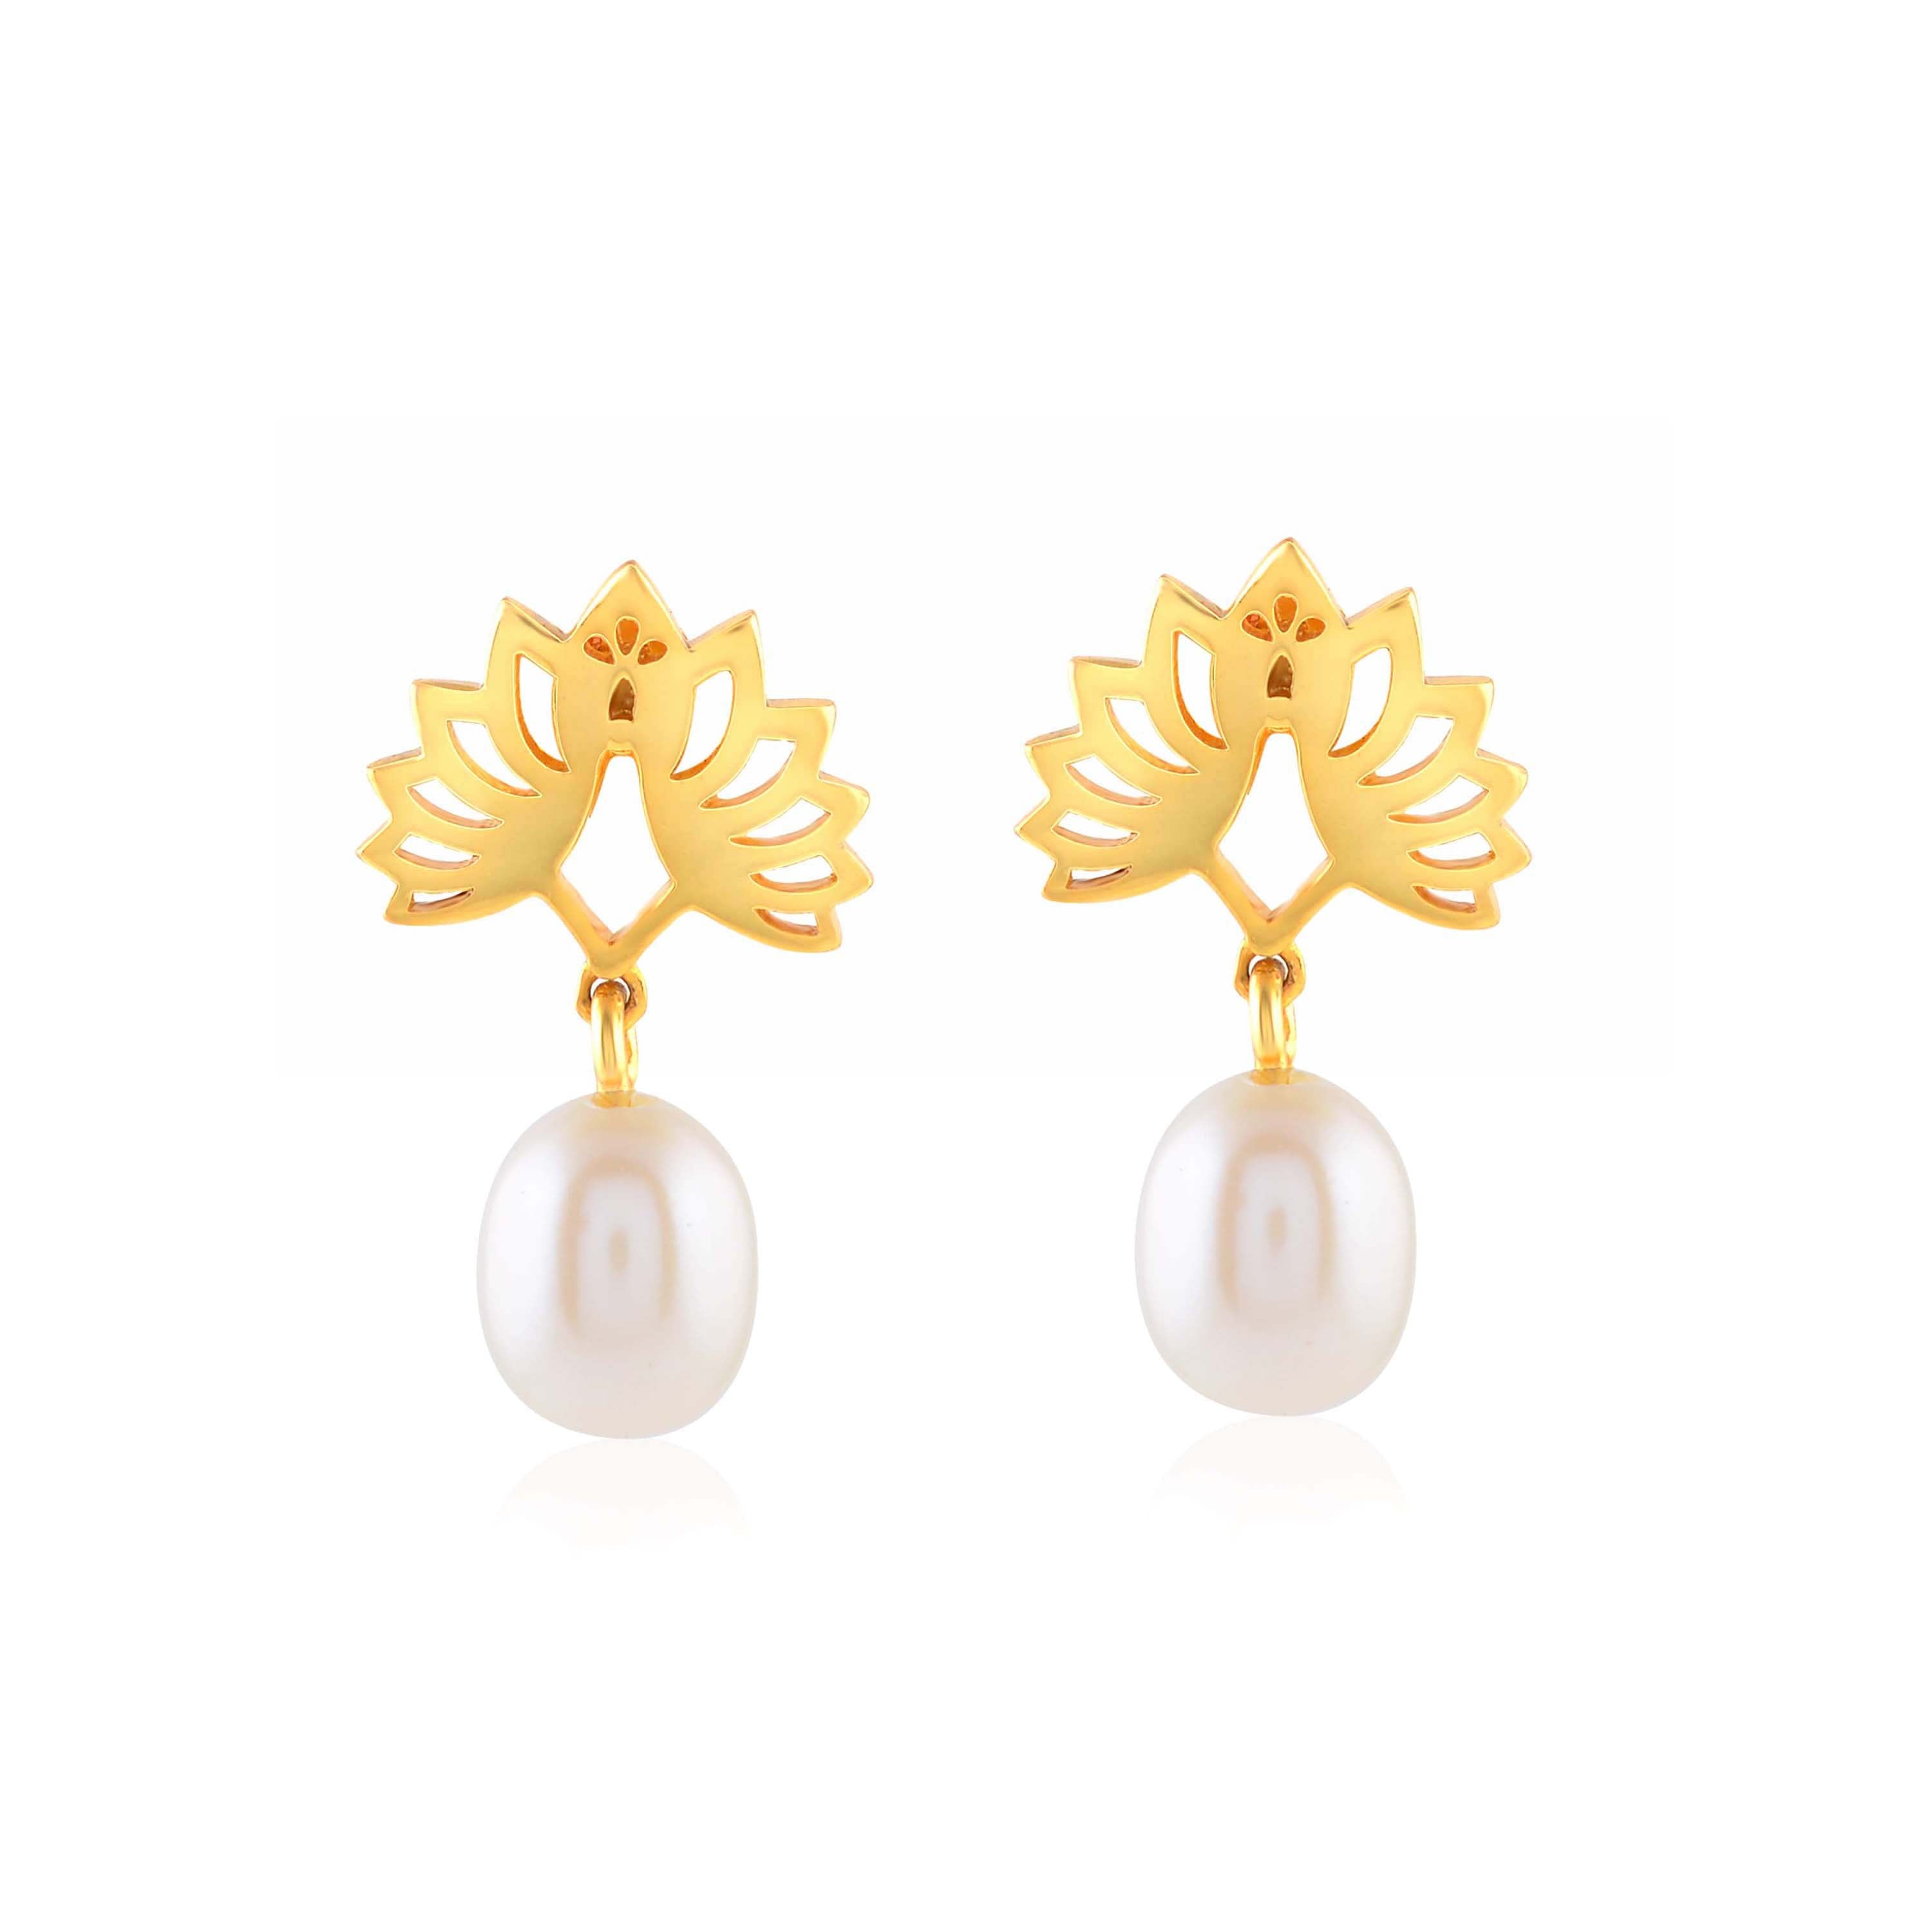 Dancing Elegance: Peacock-inspired Pearl Drop Earrings